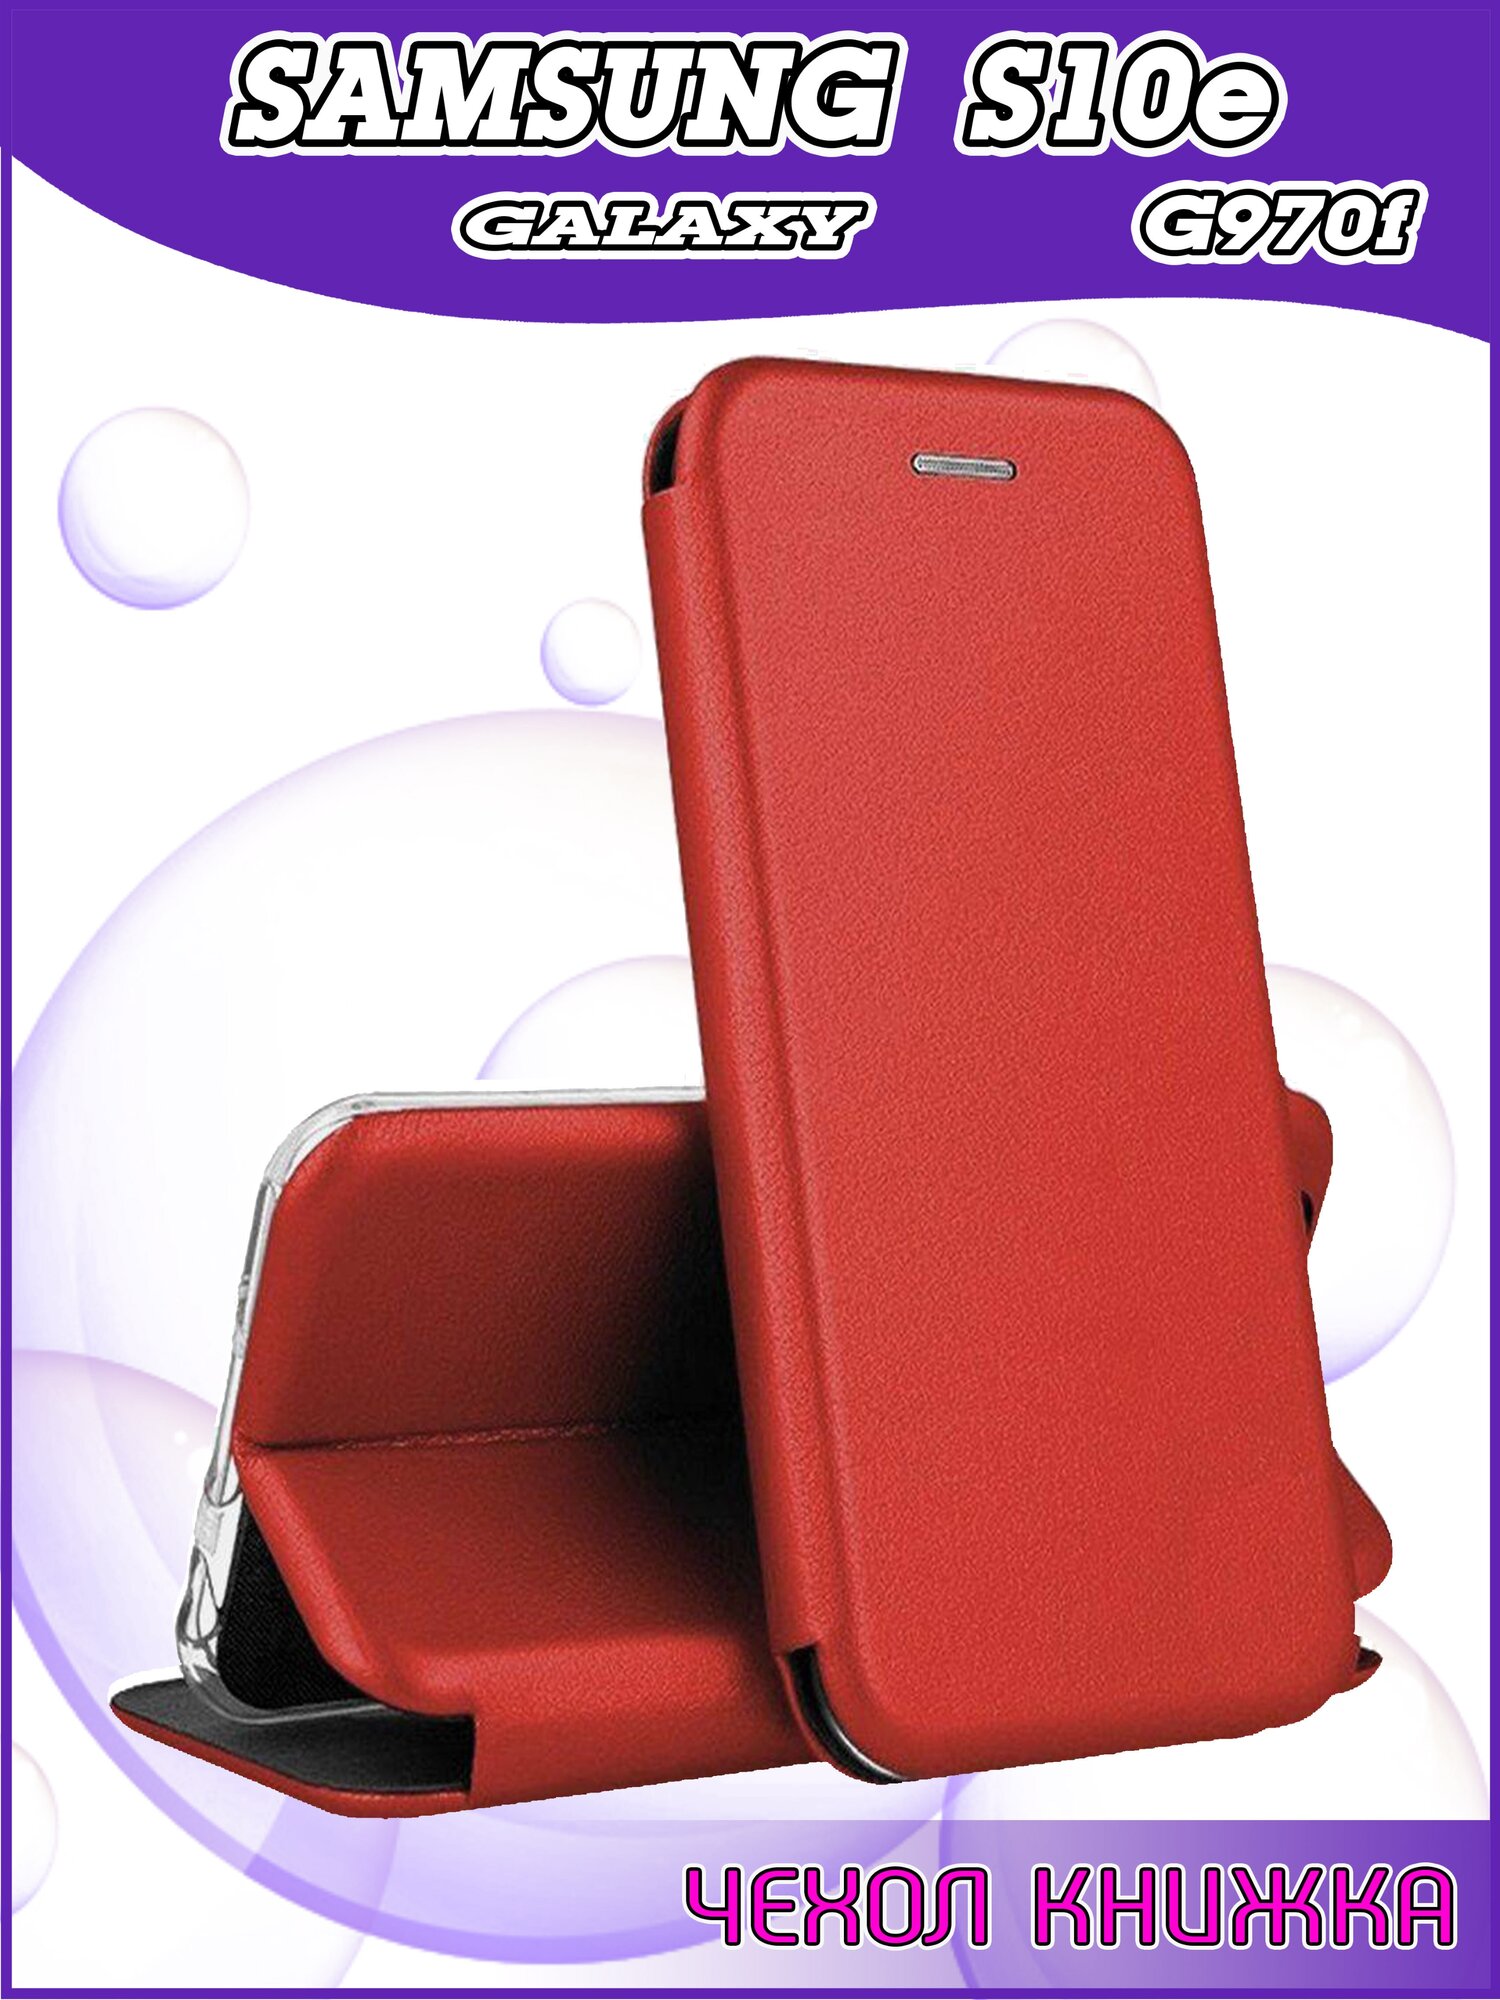 Чехол книжка Samsung Galaxy S10e G970f / Самсунг С10е качественный искусственная кожа противоударный красный